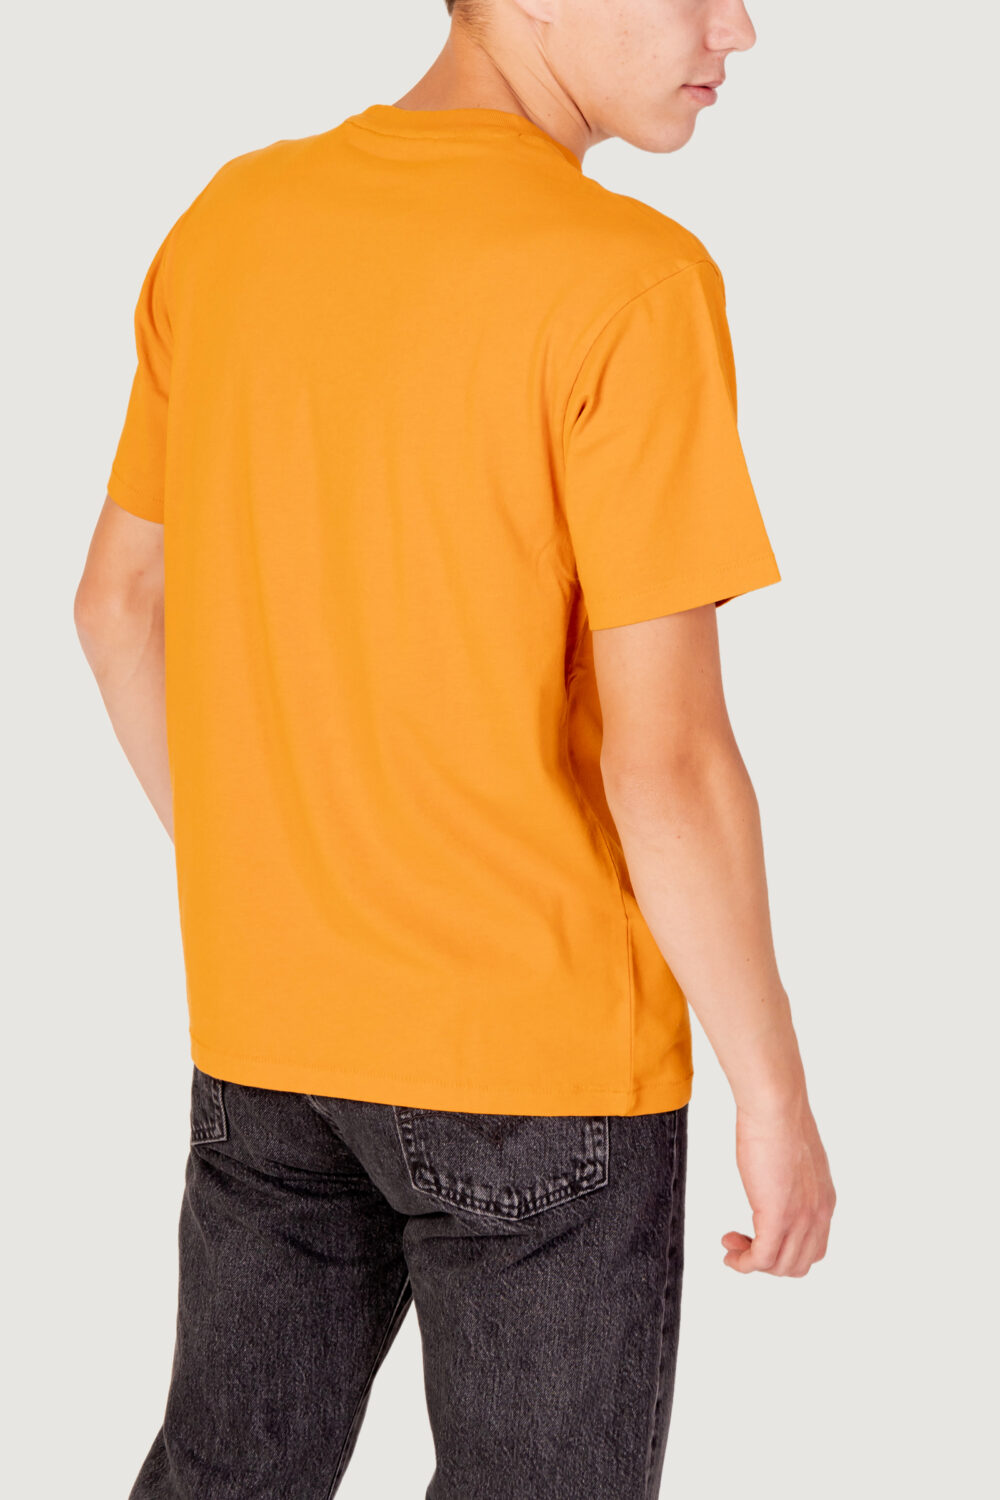 T-shirt Levi's® red tab vintage tee Arancione - Foto 4